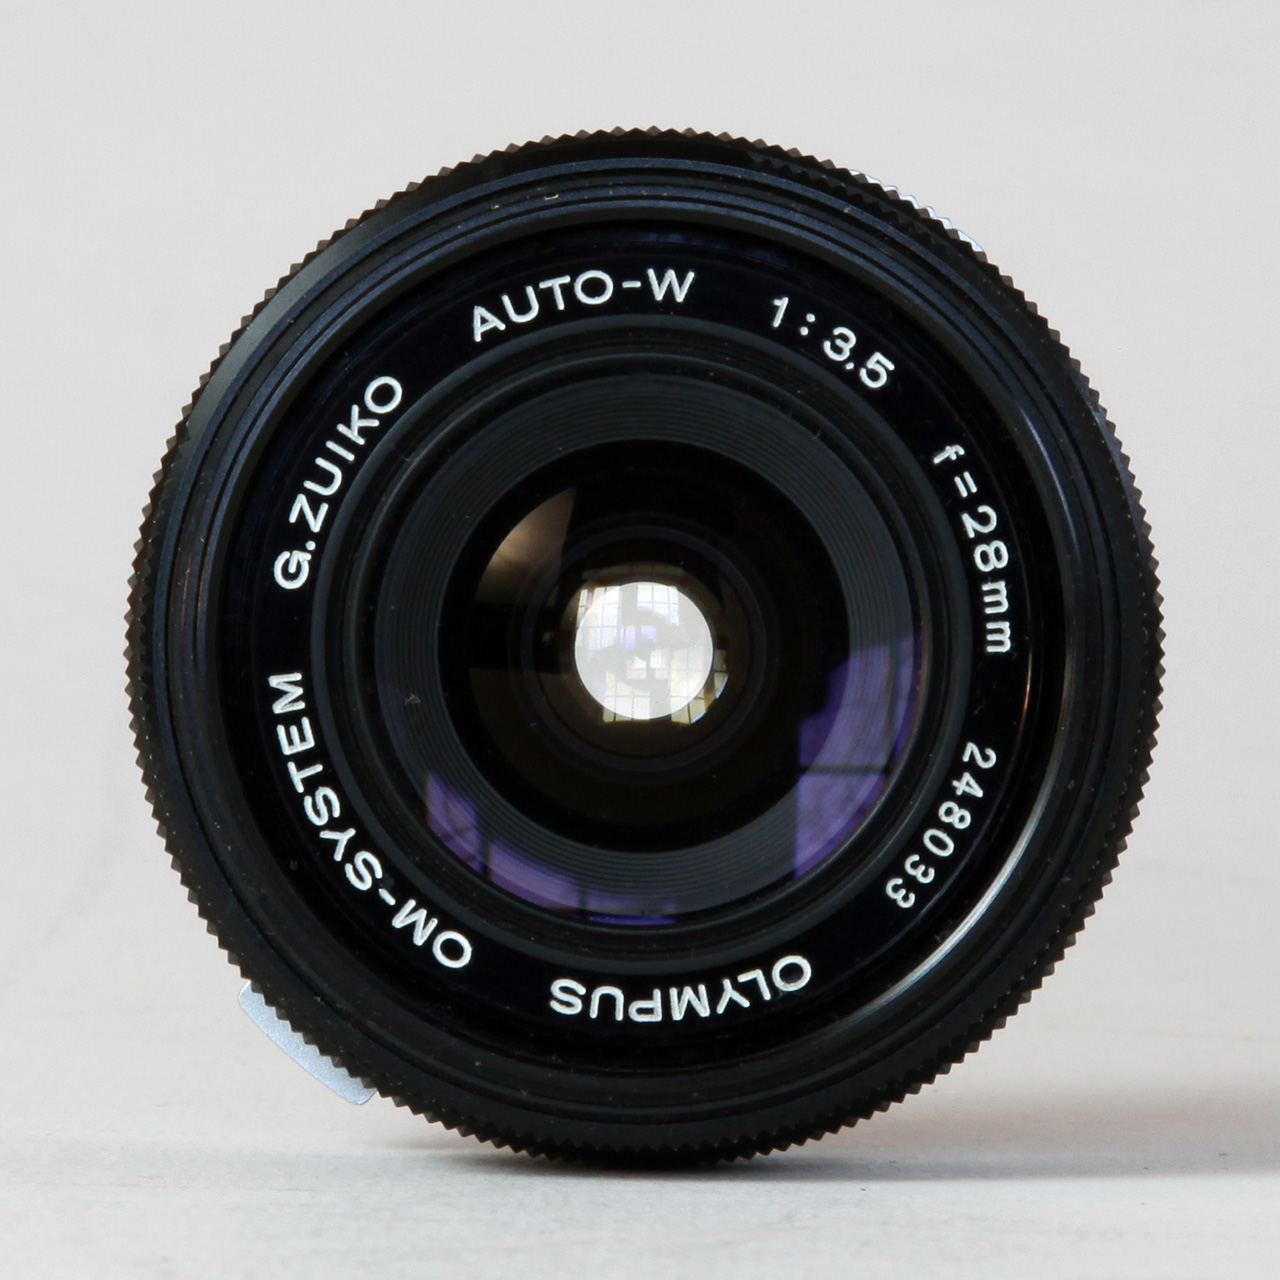 Olympus OM System G.Zuiko Auto-W 1:3.5 f=28mm with OM-1 MD